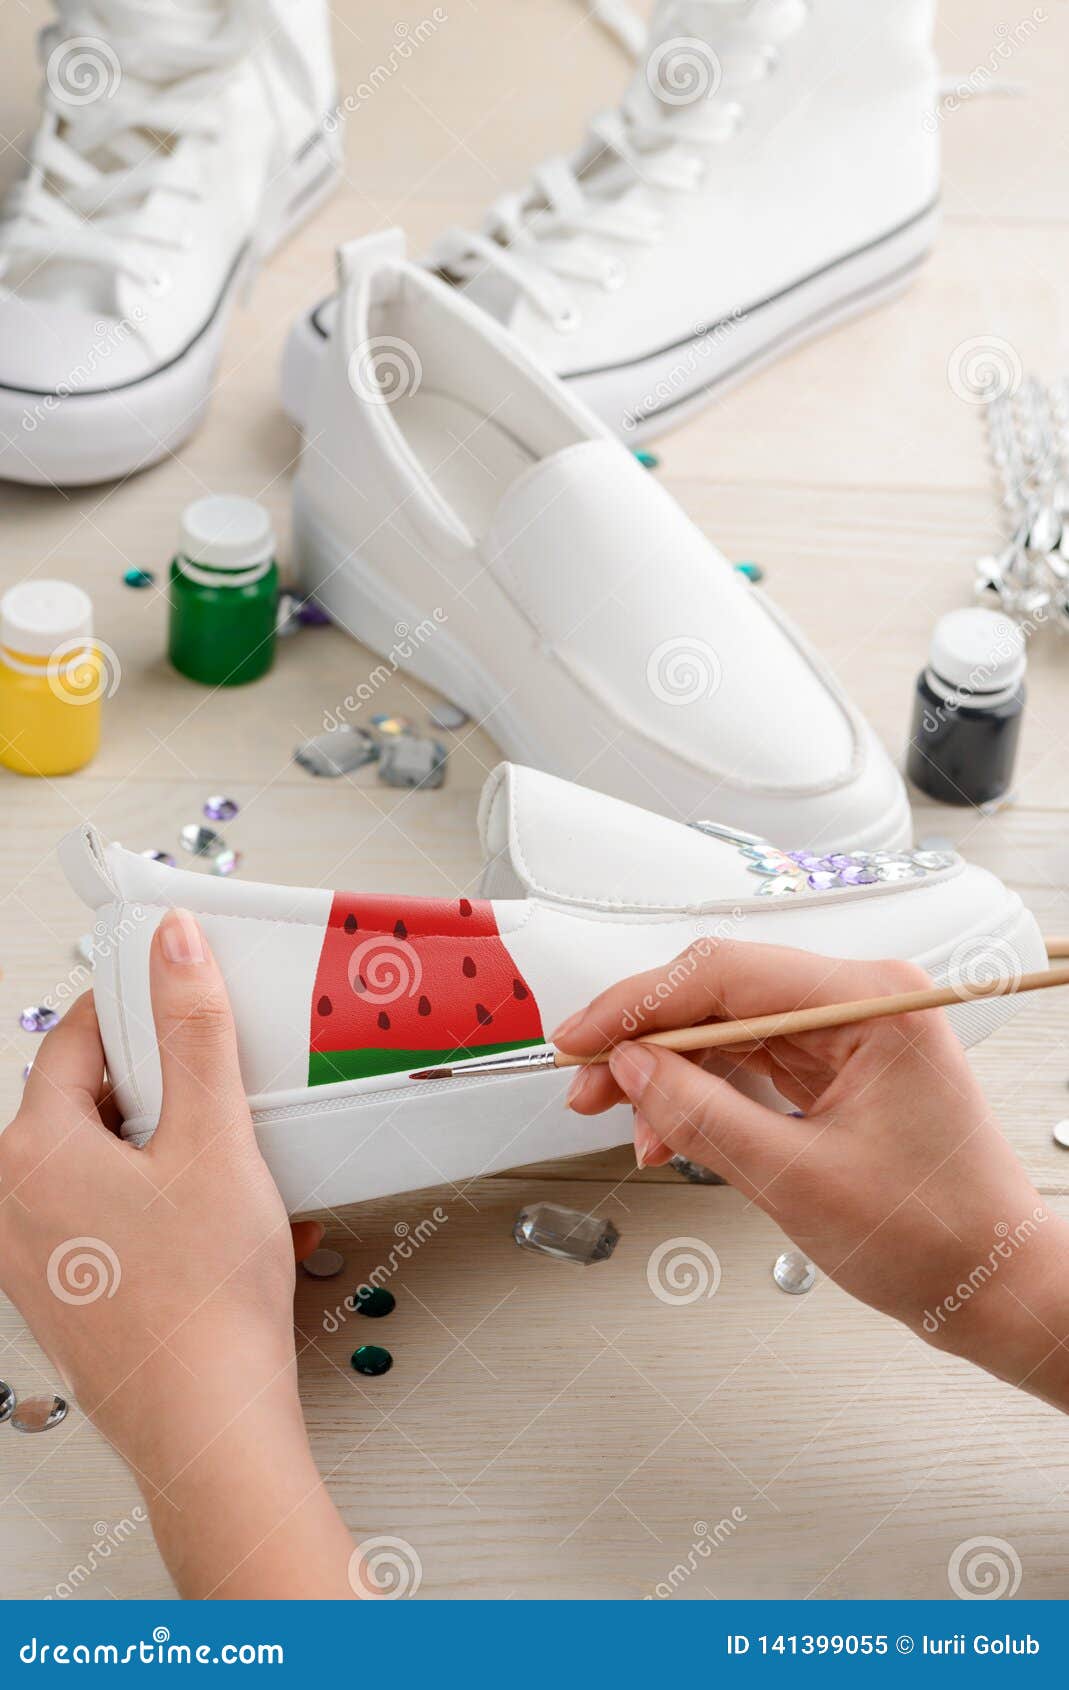 white acrylic shoe paint